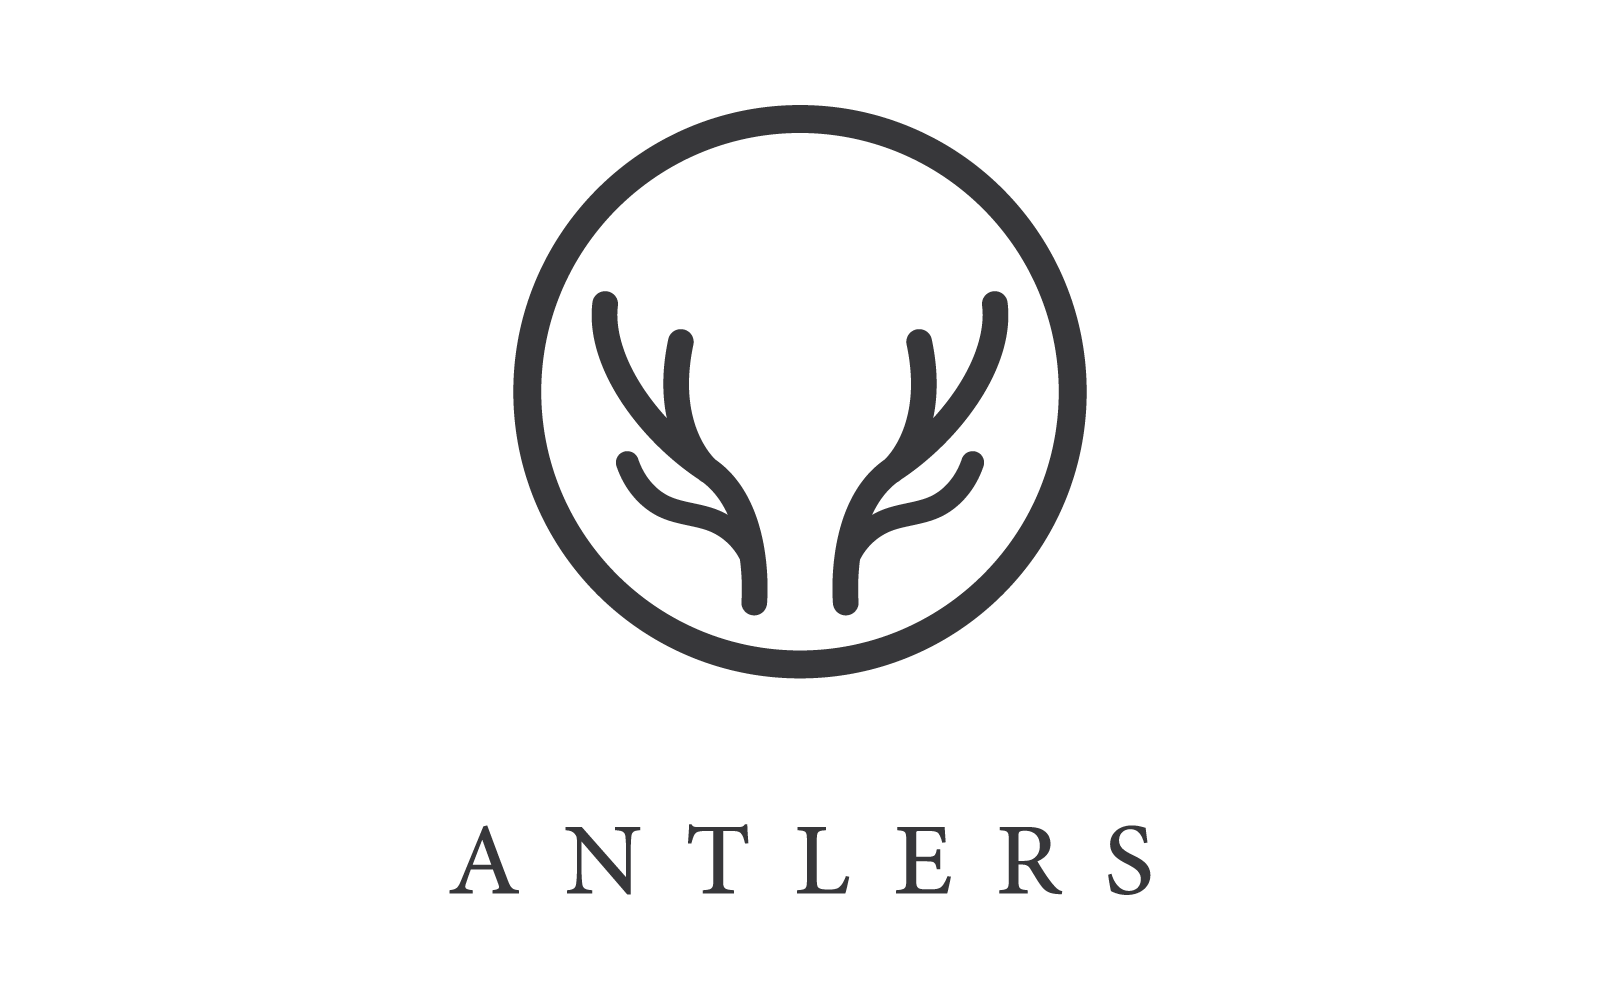 Deer antler ilustration logo vector template eps 10